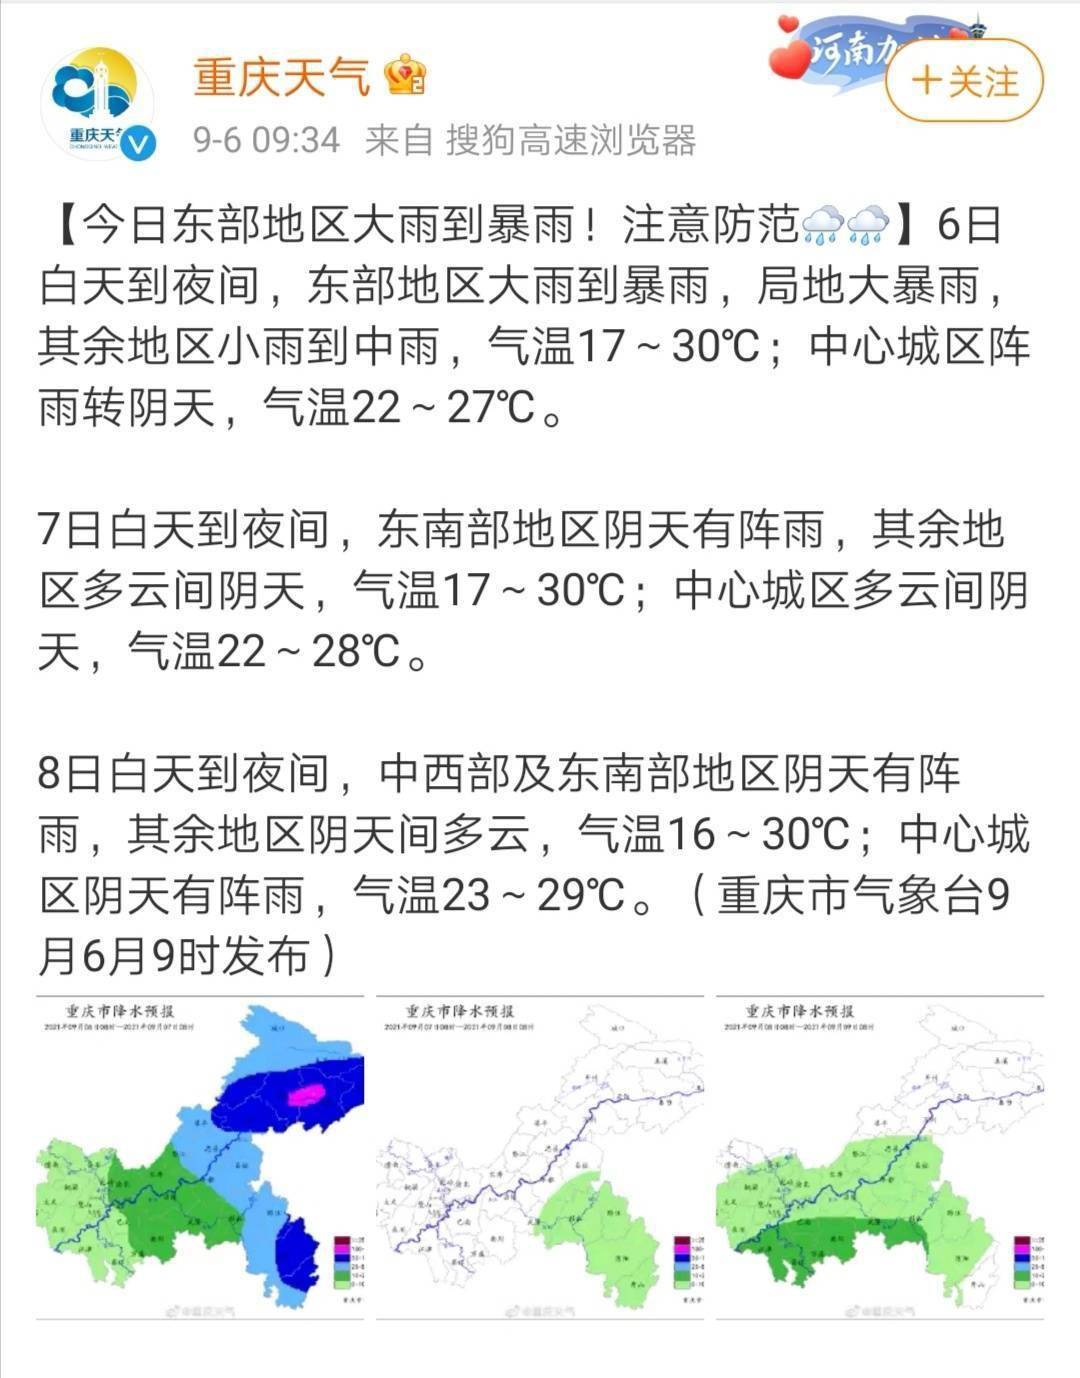 嘉陵江2号洪水形成 重庆升级发布暴雨黄色预警 16个区县要注意了